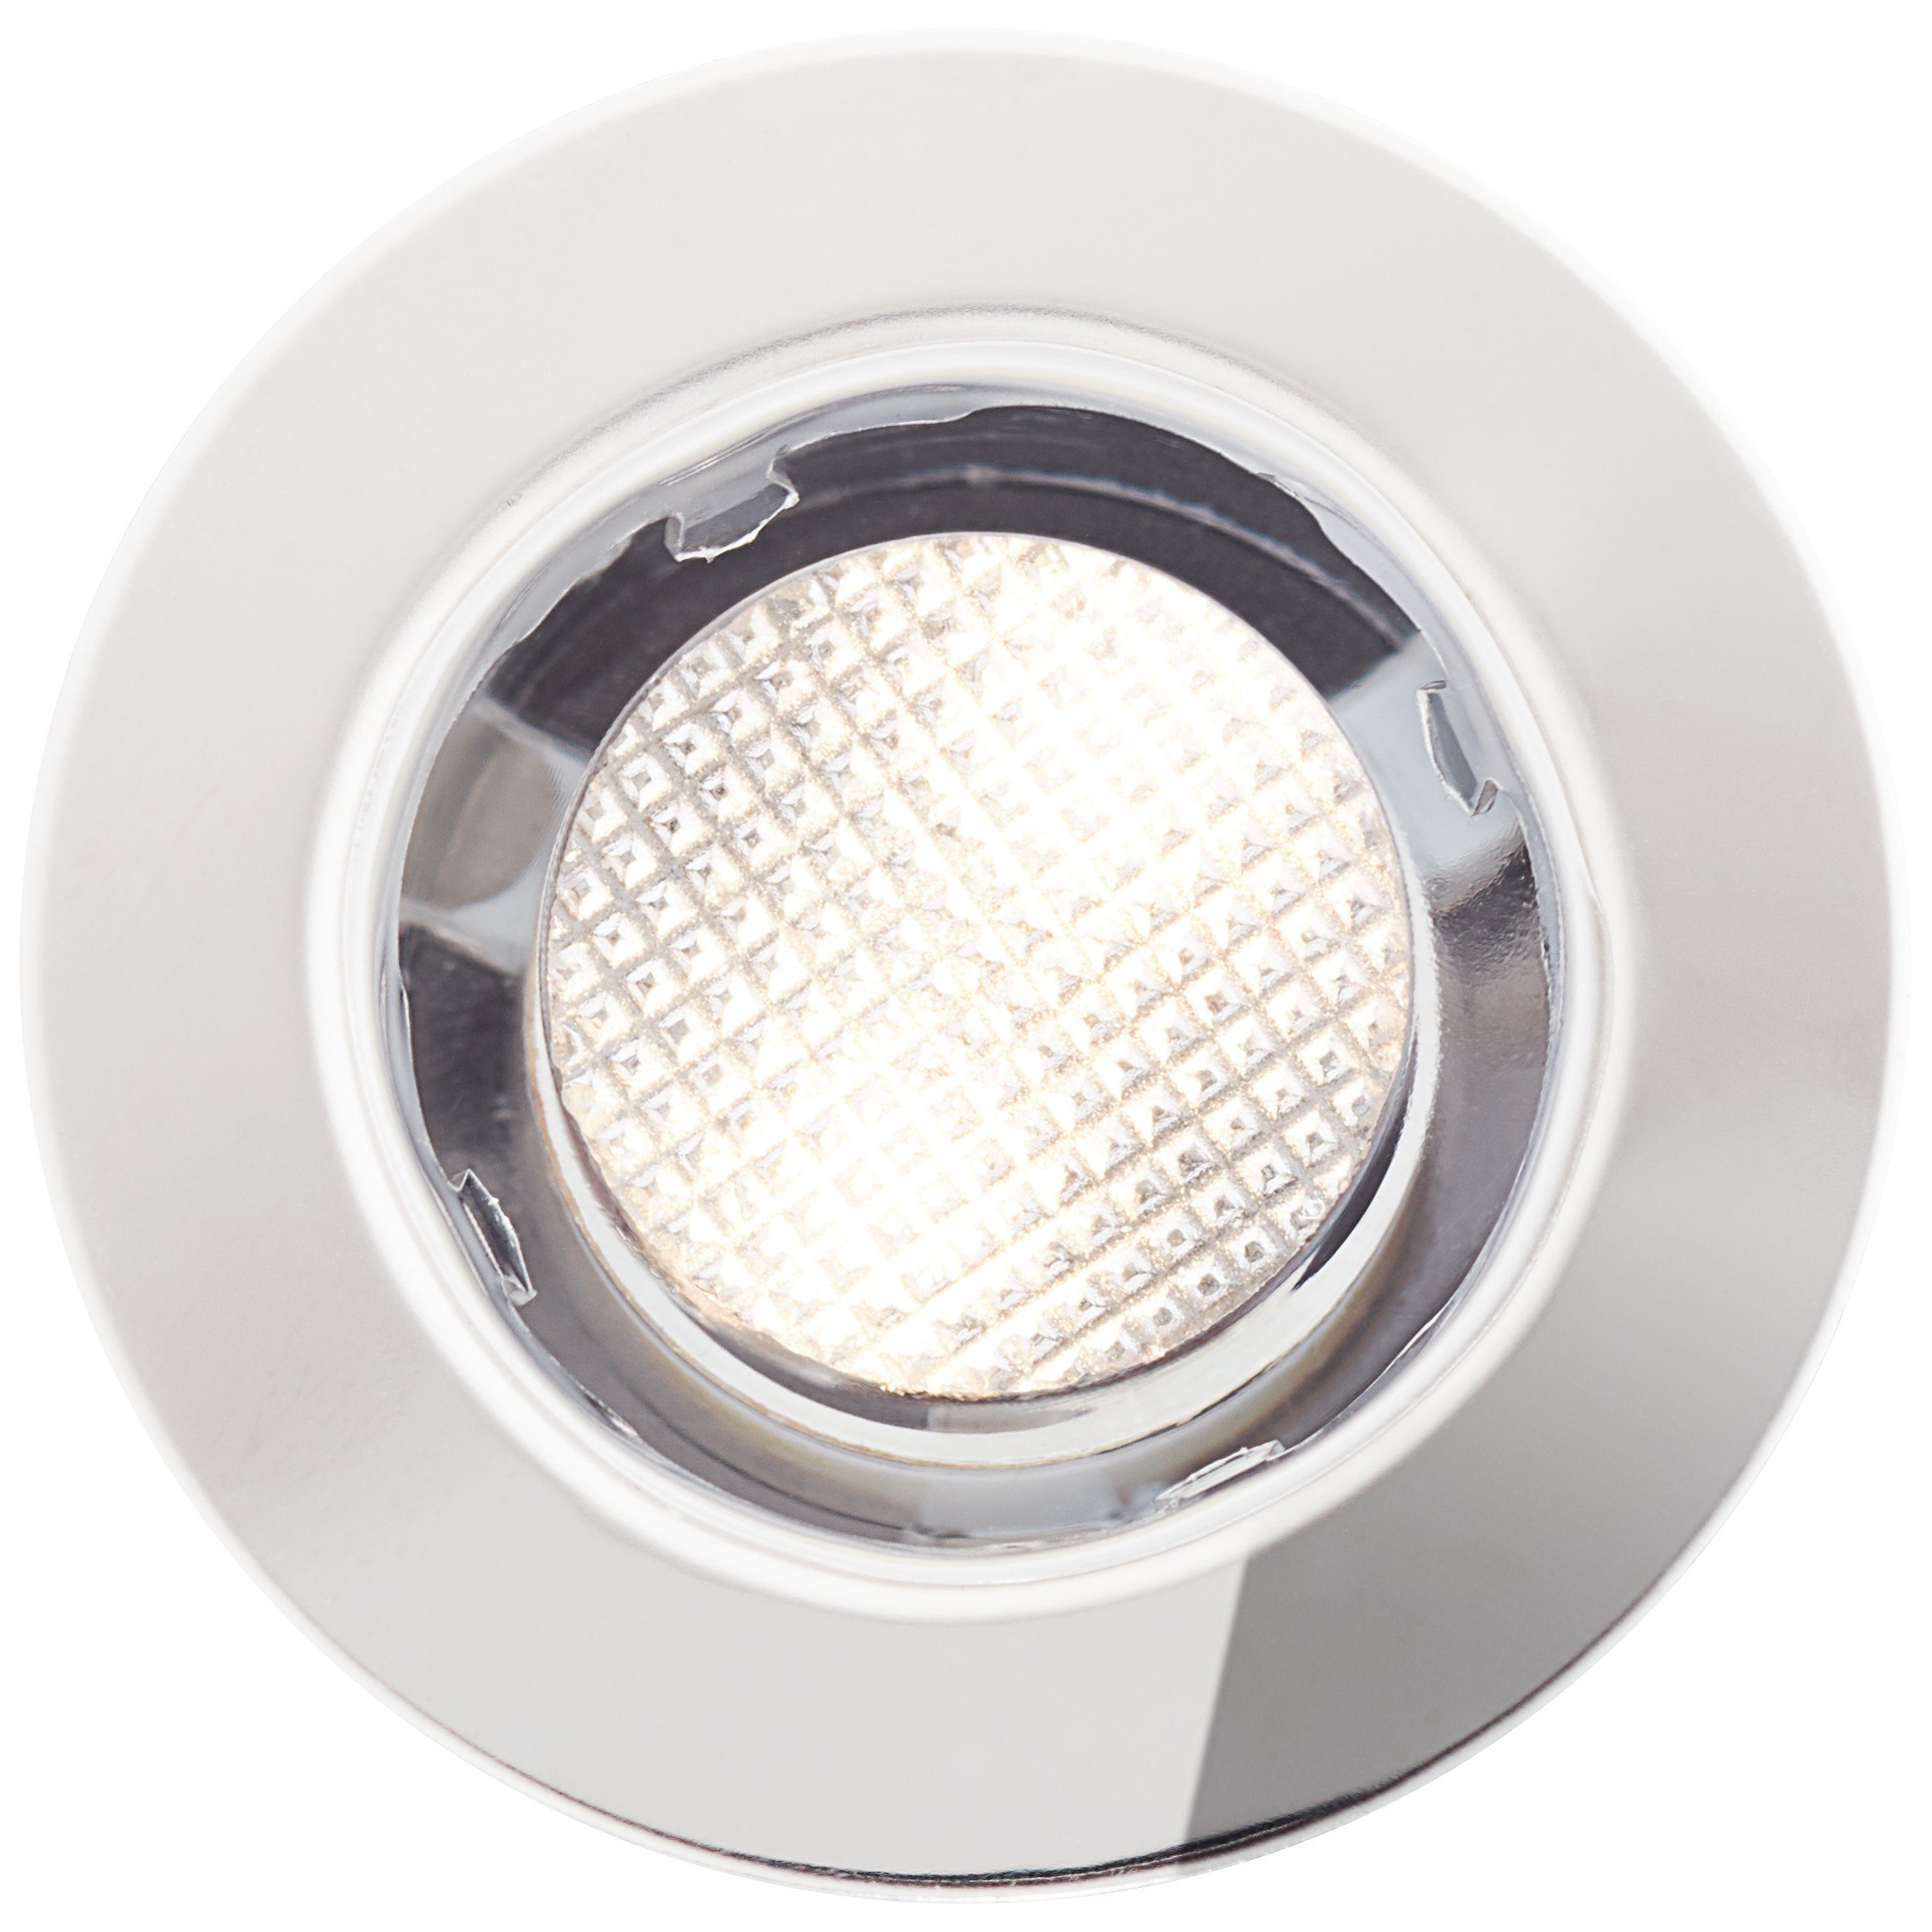 Lightbox Einbauleuchte, LED fest integriert, warmweiß, 10er Set LED  Einbaulampen mit warmweißem Licht - spritzwassergeschützt